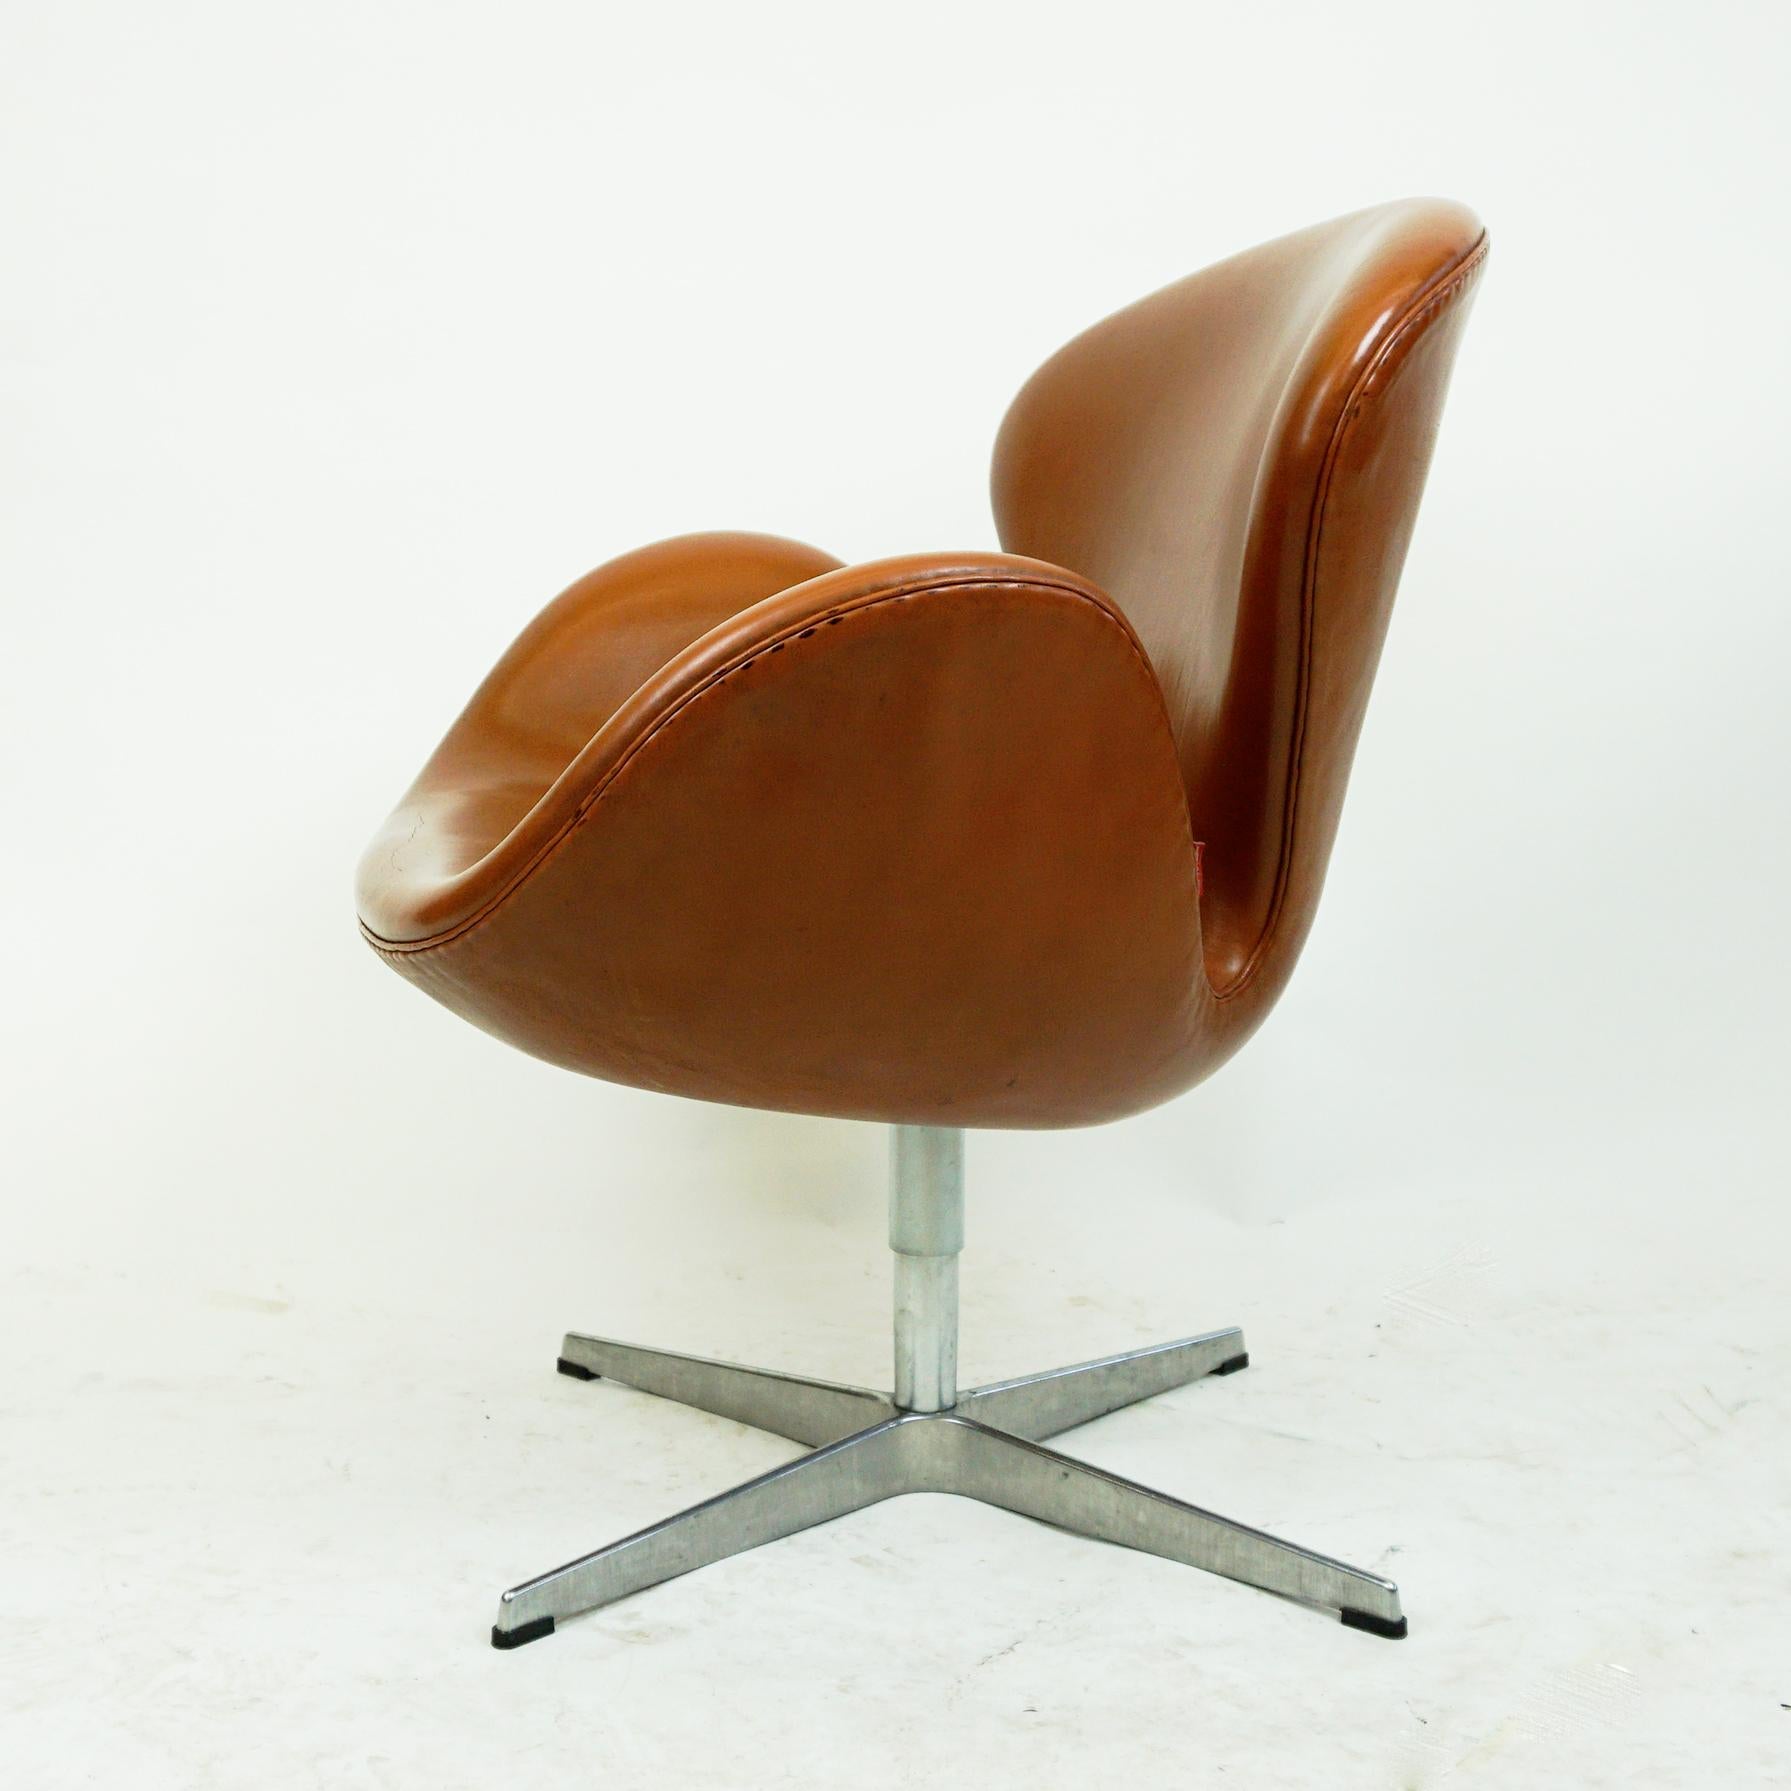 Arne Jacobsen Brown Leather Swan Chair by Fritz Hansen, Denmark 1